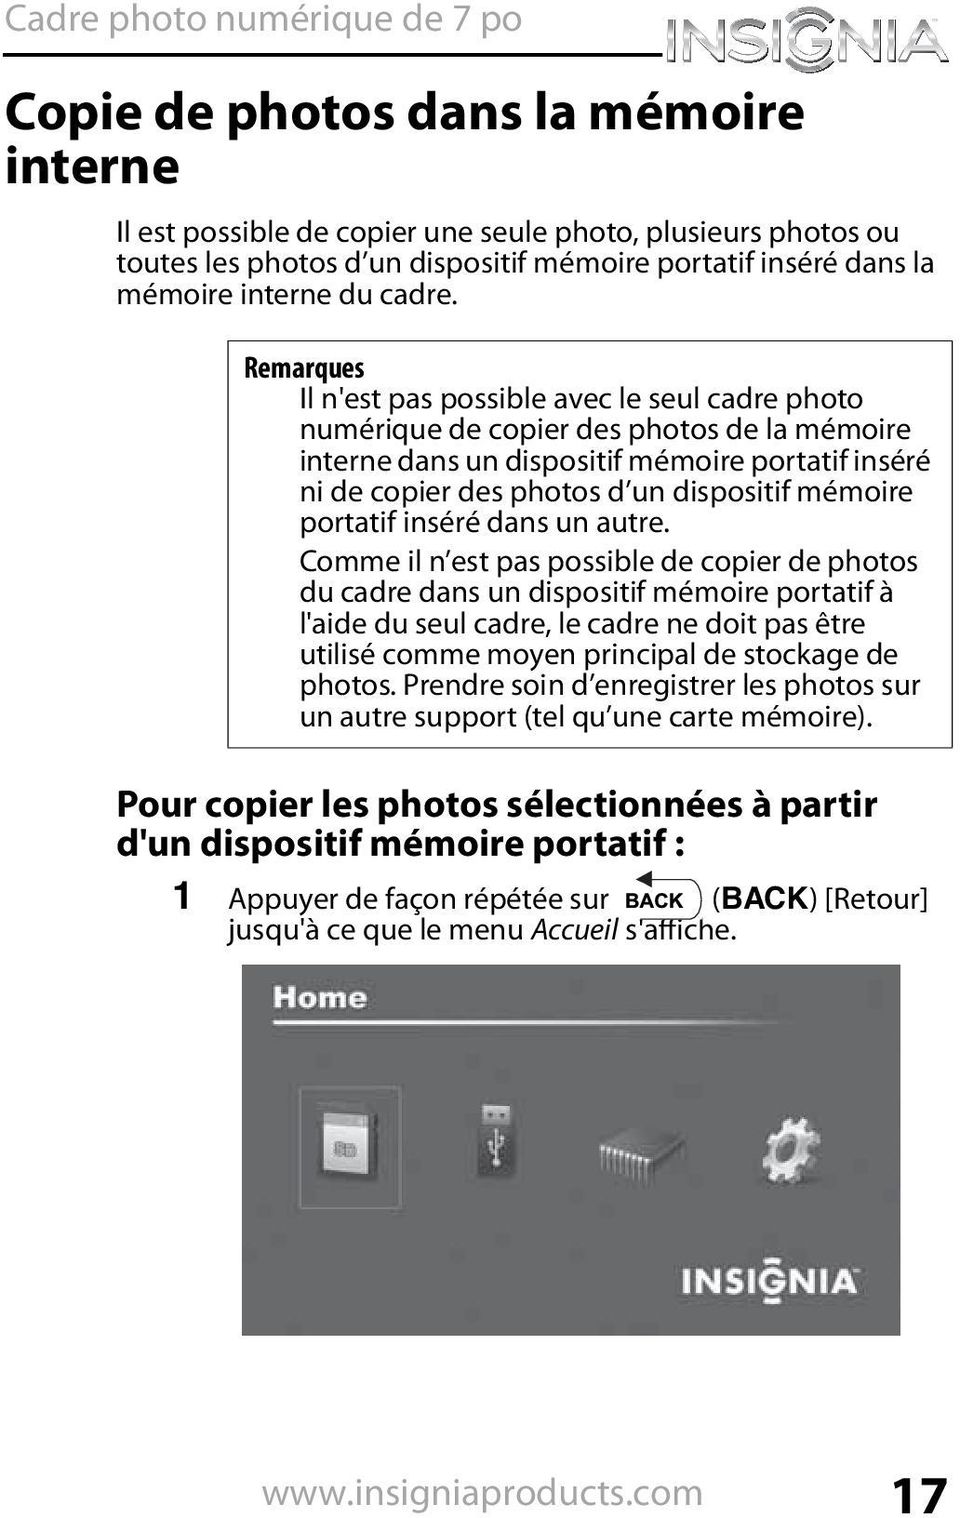 Remarques Il n'est pas possible avec le seul cadre photo numérique de copier des photos de la mémoire interne dans un dispositif mémoire portatif inséré ni de copier des photos d un dispositif